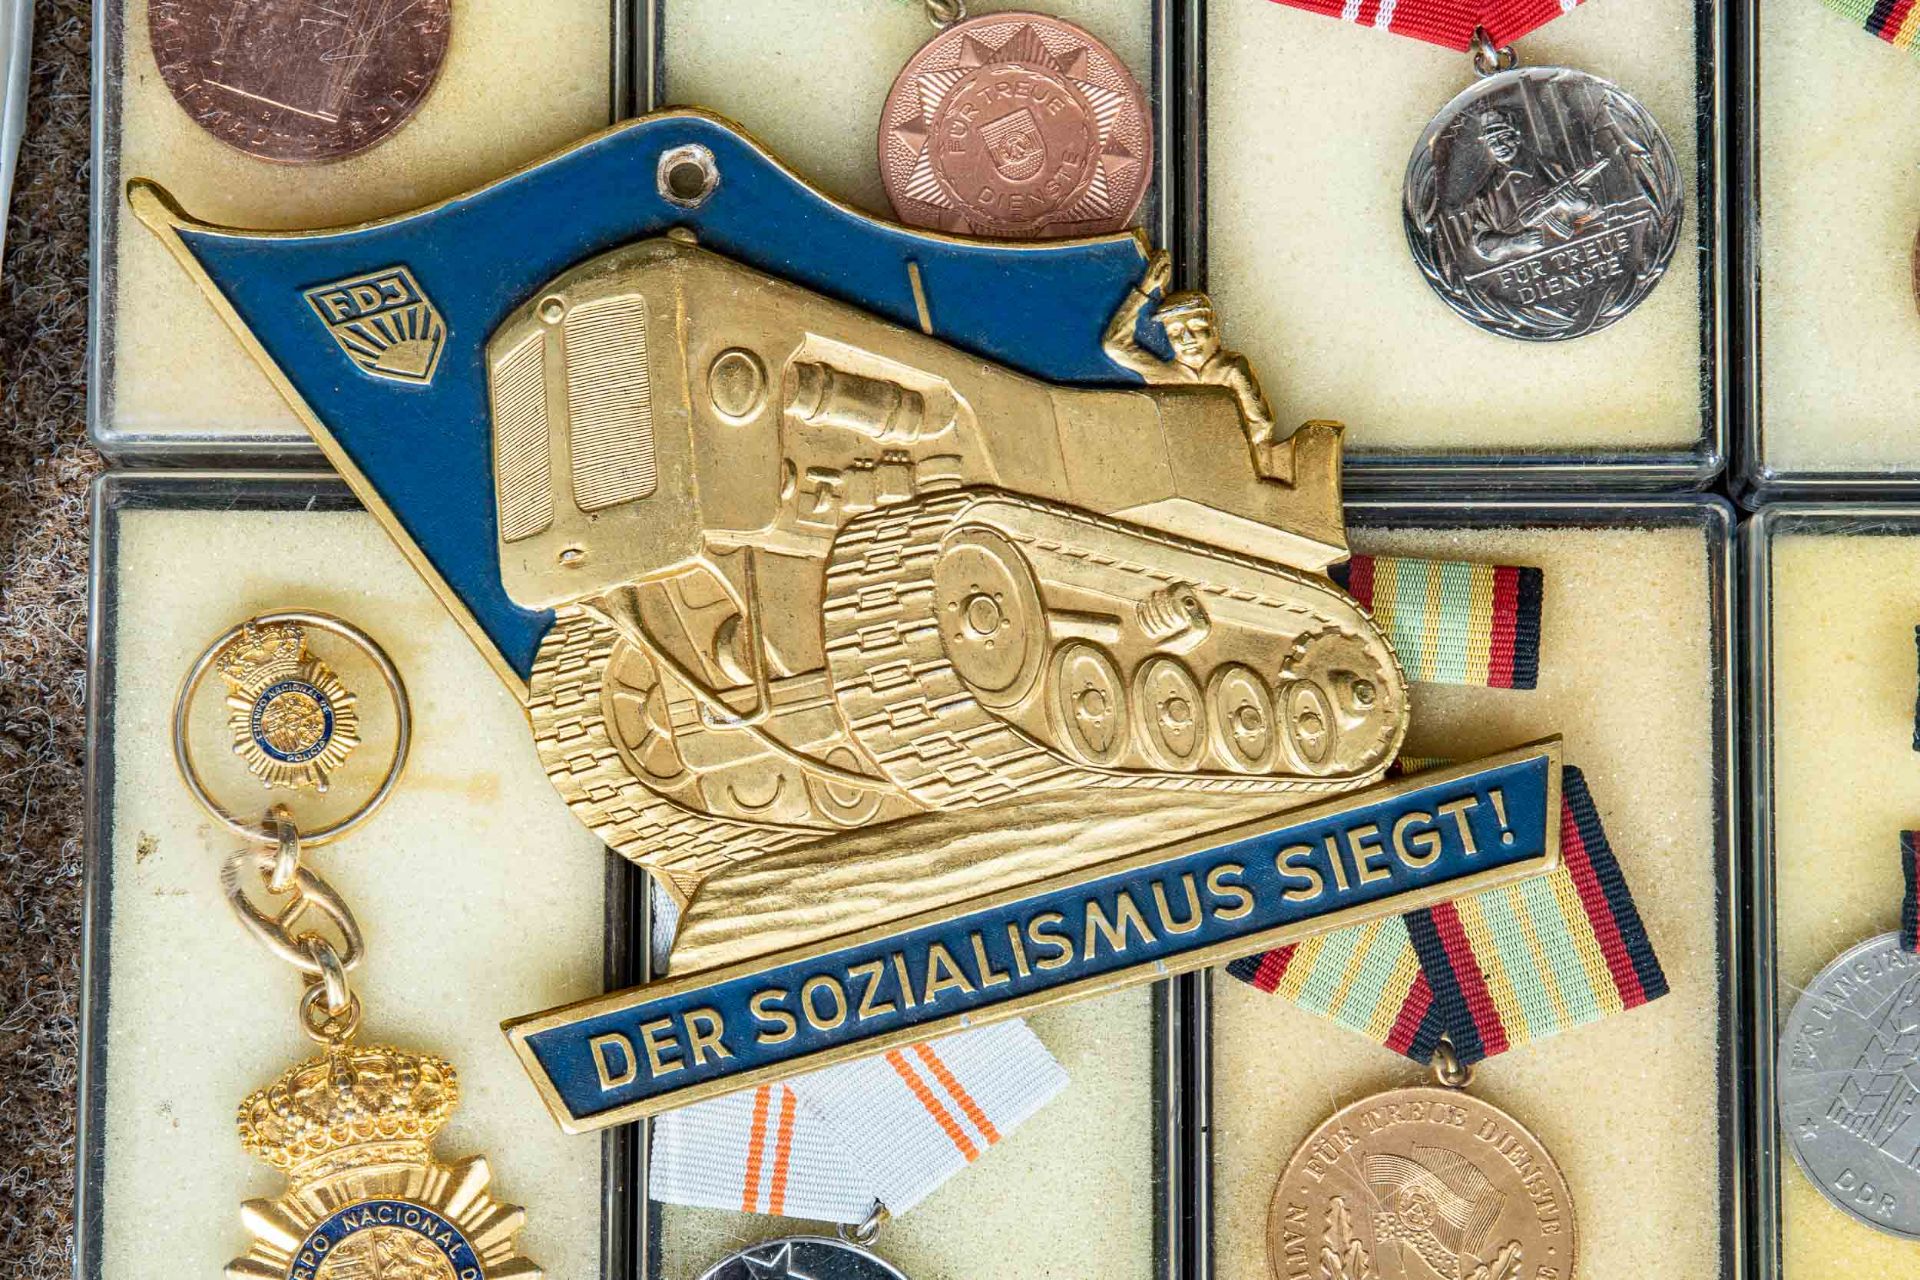 Ca. 1500 Stück "Orden, Abzeichen, Pins, Uniformteile und Auszeichnungen" aus versch. Staaten und po - Image 7 of 11